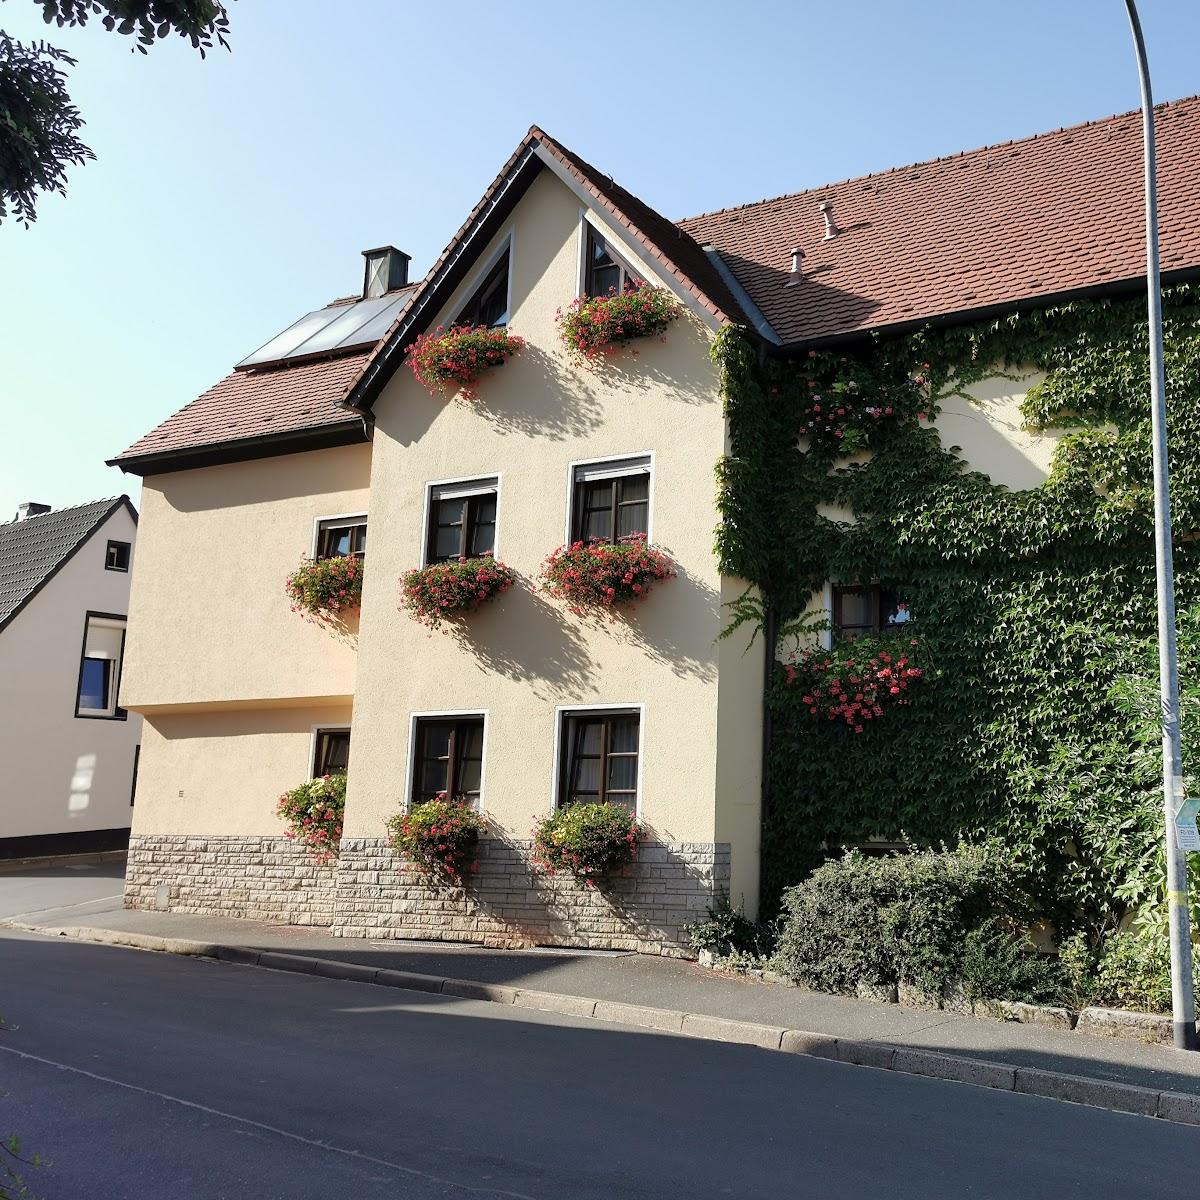 Restaurant "Hotel-Gasthaus Schweizergrom" in Forchheim